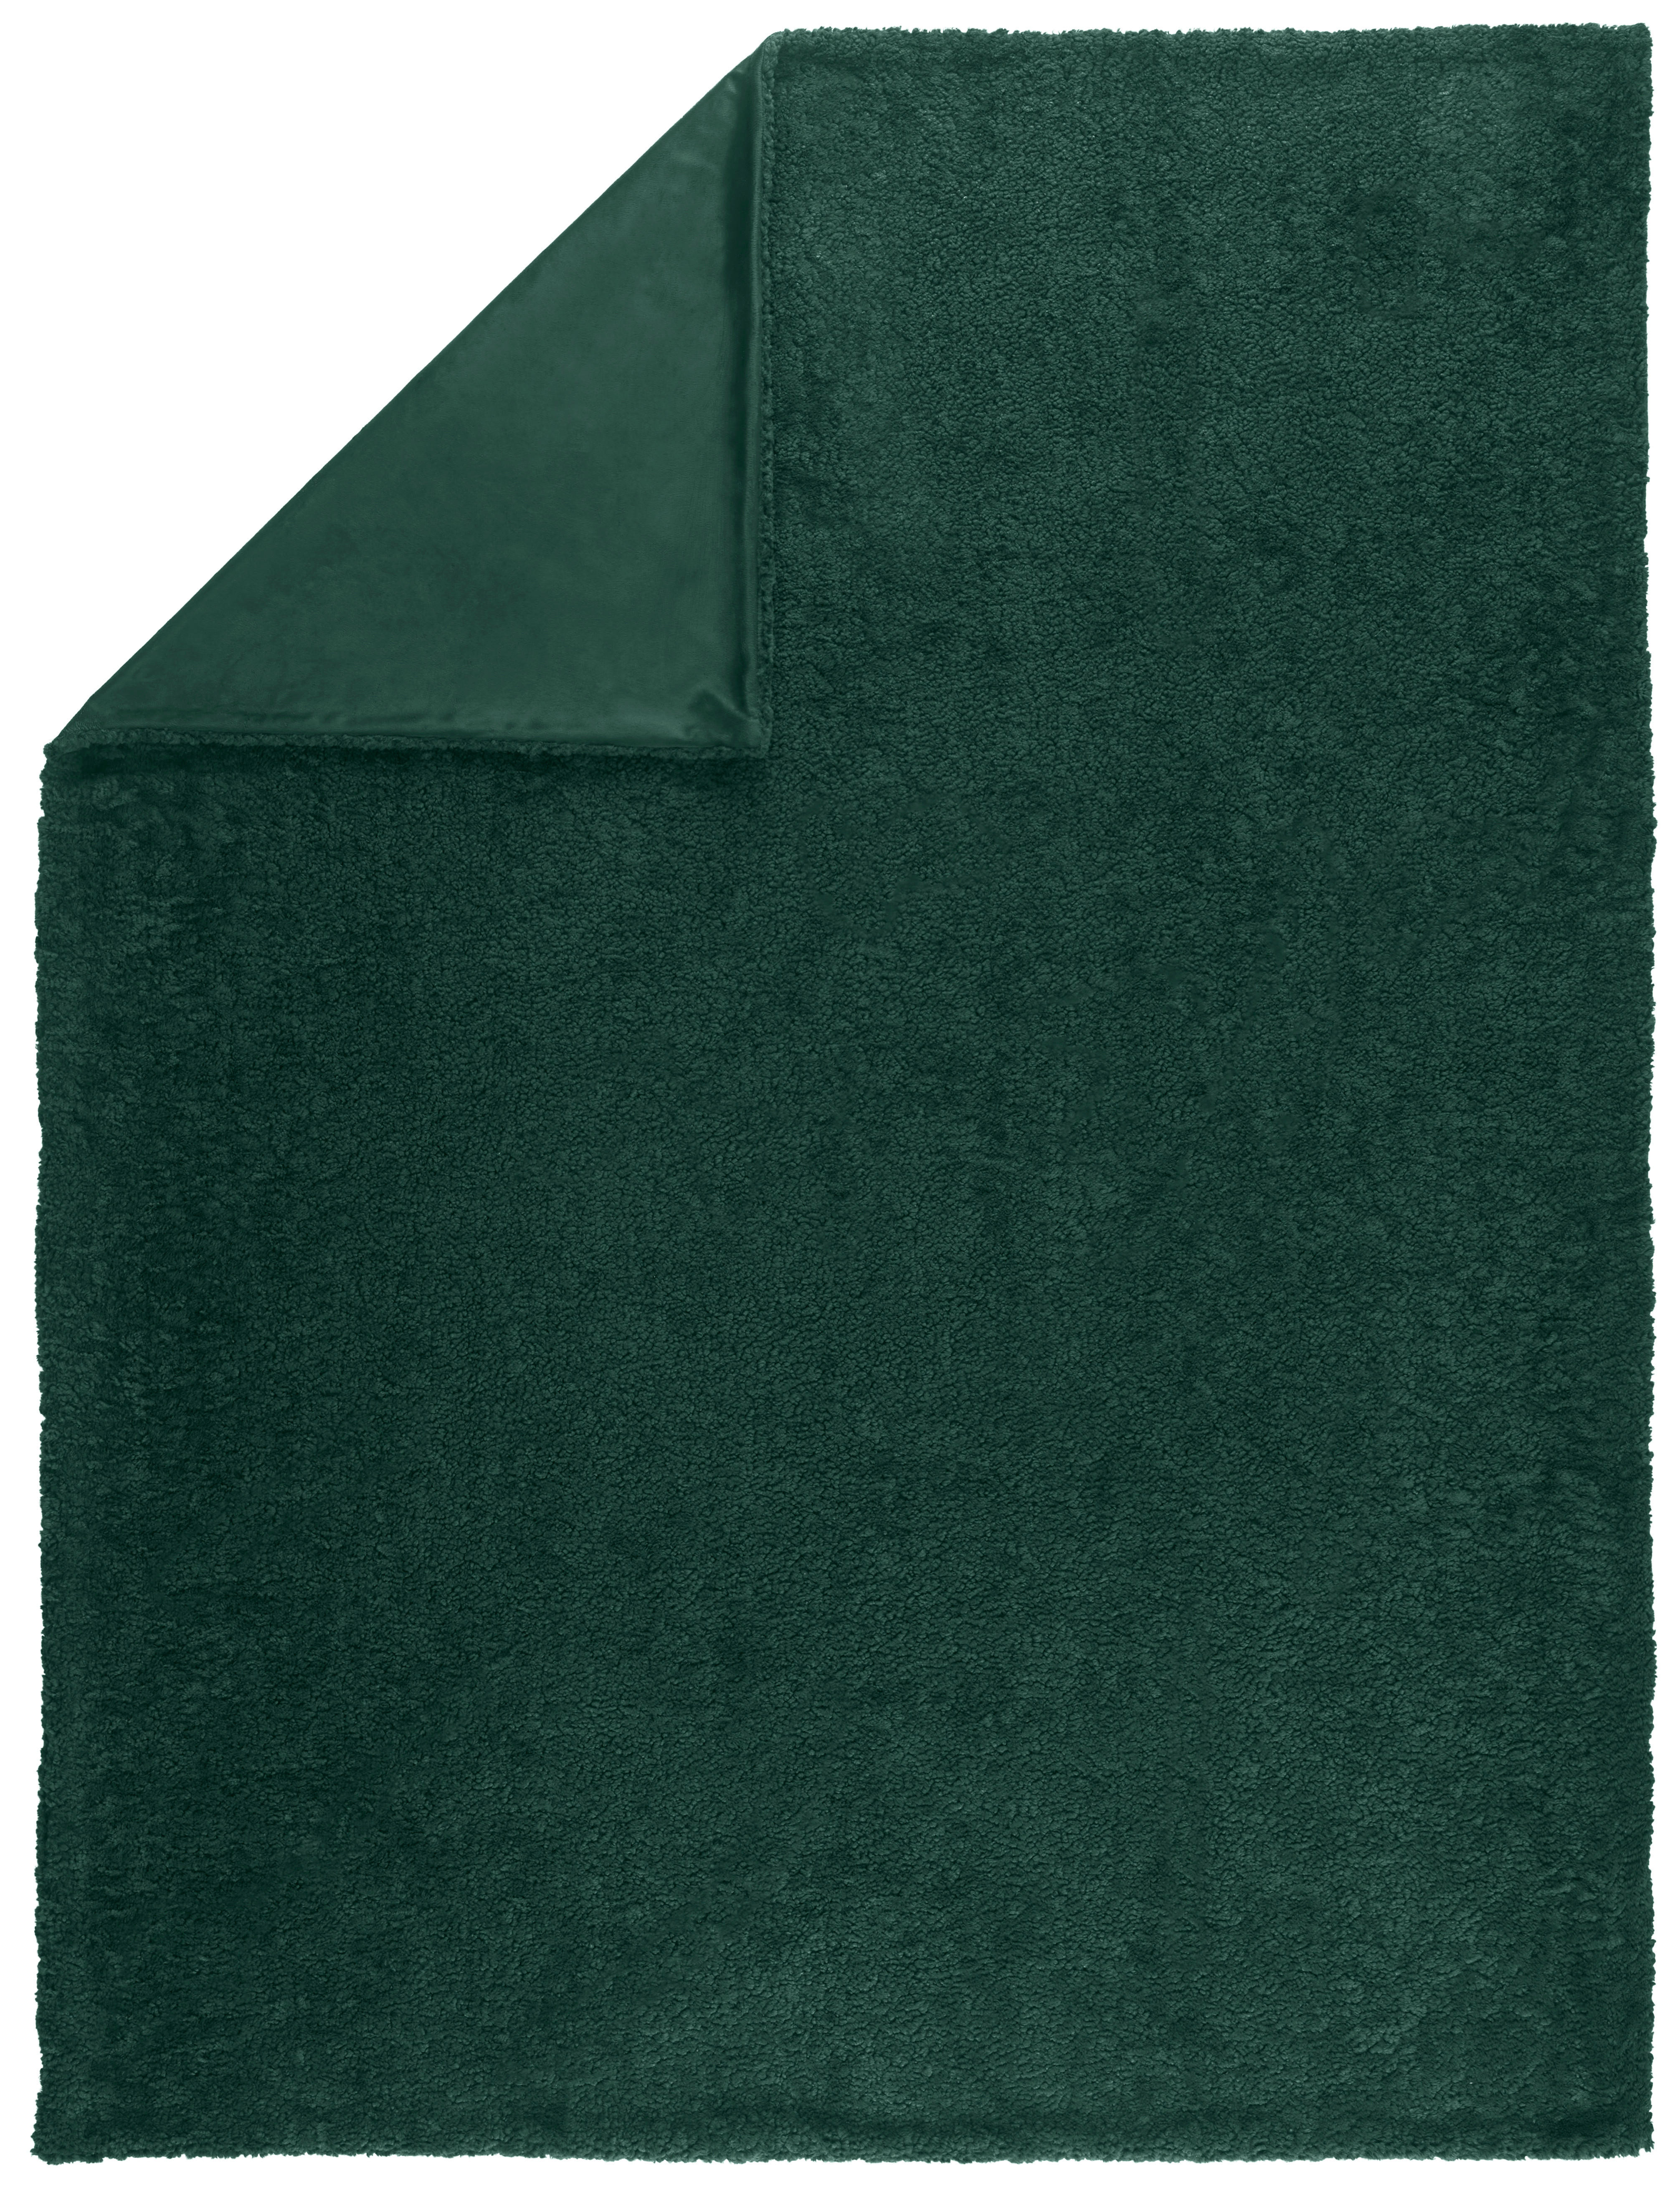 FILT 150/200 cm  - grön, Klassisk, textil (150/200cm) - Novel